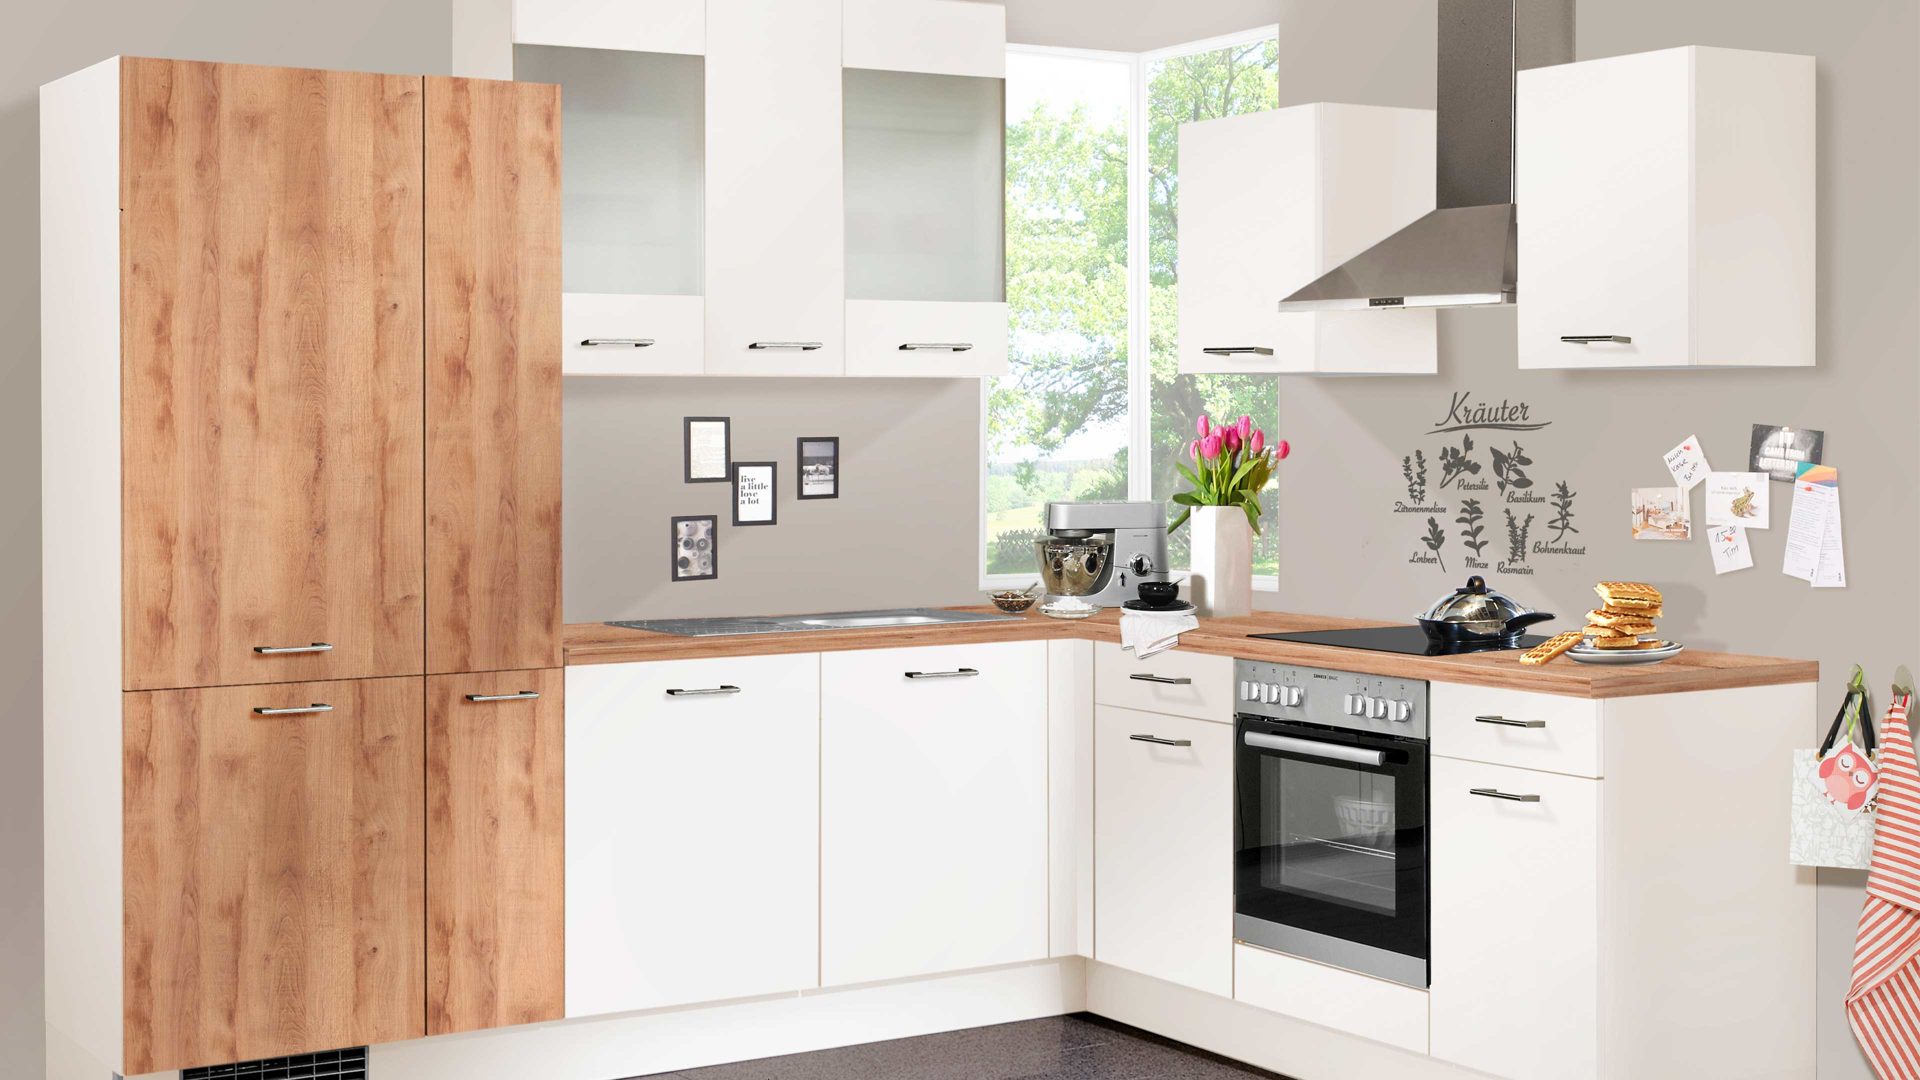 Einbauküche Pino küchen aus Holz in Weiß pino Einbauküche inklusive ZANKER Einbaugeräte Magnolie & Honig Eiche - Stellfläche ca. 275 x 205 cm